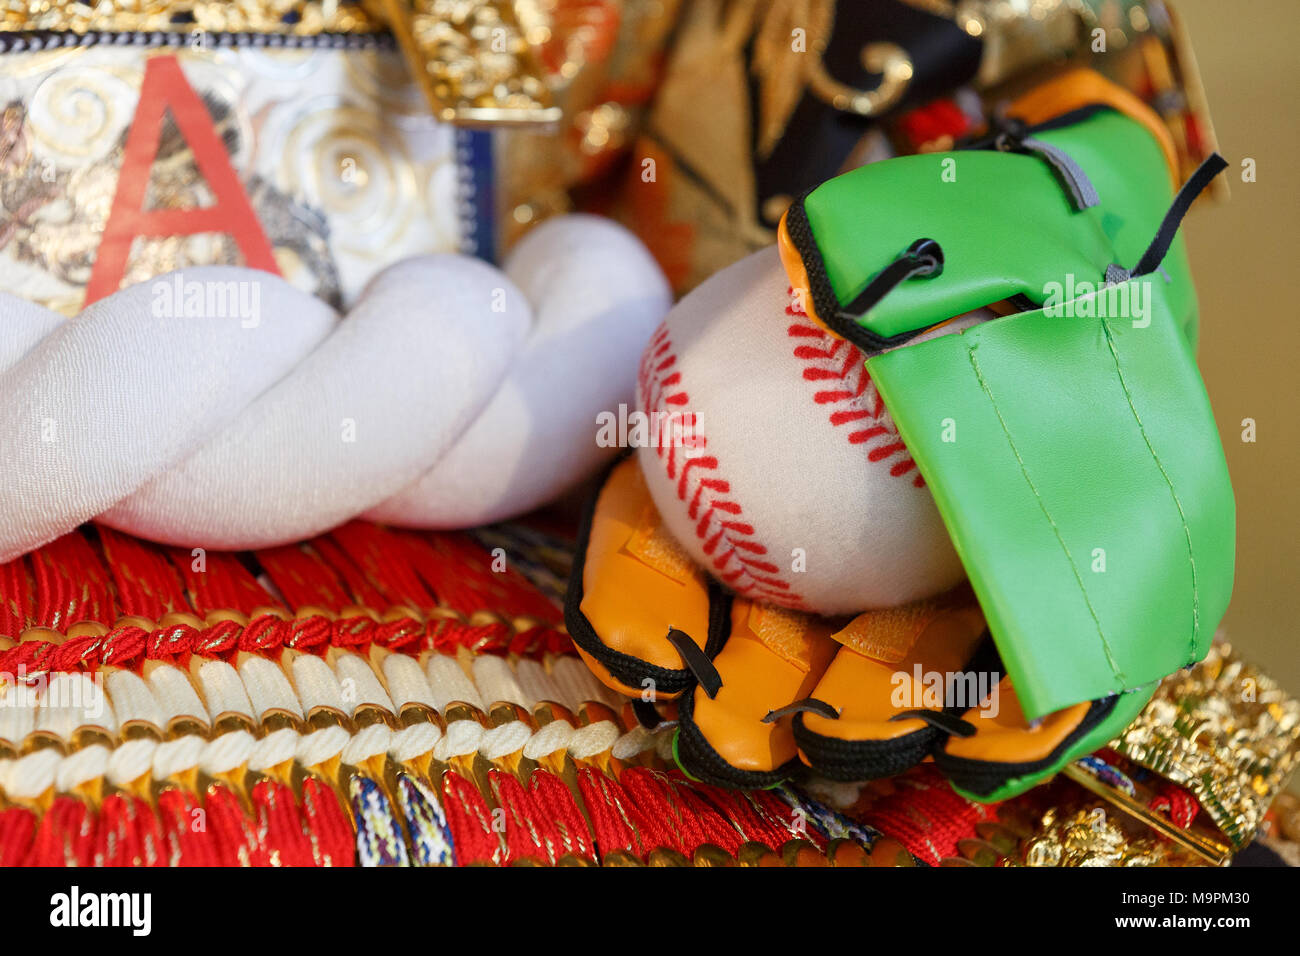 Japanische Doll Maker Kyugetsu stellt neue Hina doll nach professionellen Baseballspieler Shohei Otani vor Tag der Kinder, am 28. März 2018, Tokio, Japan modelliert. Die japanische Doll Maker Kyugetsu Co. stellte eine Reihe von Hina Puppen modelliert nach Japanischen professionellen Baseballspieler Shohei Otani und professionelle Shogi Spieler Sota Fujii und Yoshiharu Habu im Showroom der Firma von 28. März bis 29. Tag der Kinder wird jährlich gefeiert am 5. Mai für eine gute Gesundheit und Erfolg für japanische Kinder durch Anzeige von traditionellen Puppen zu wünschen. Credit: Rodrigo Reyes Marin/LBA/Alamy leben Nachrichten Stockfoto